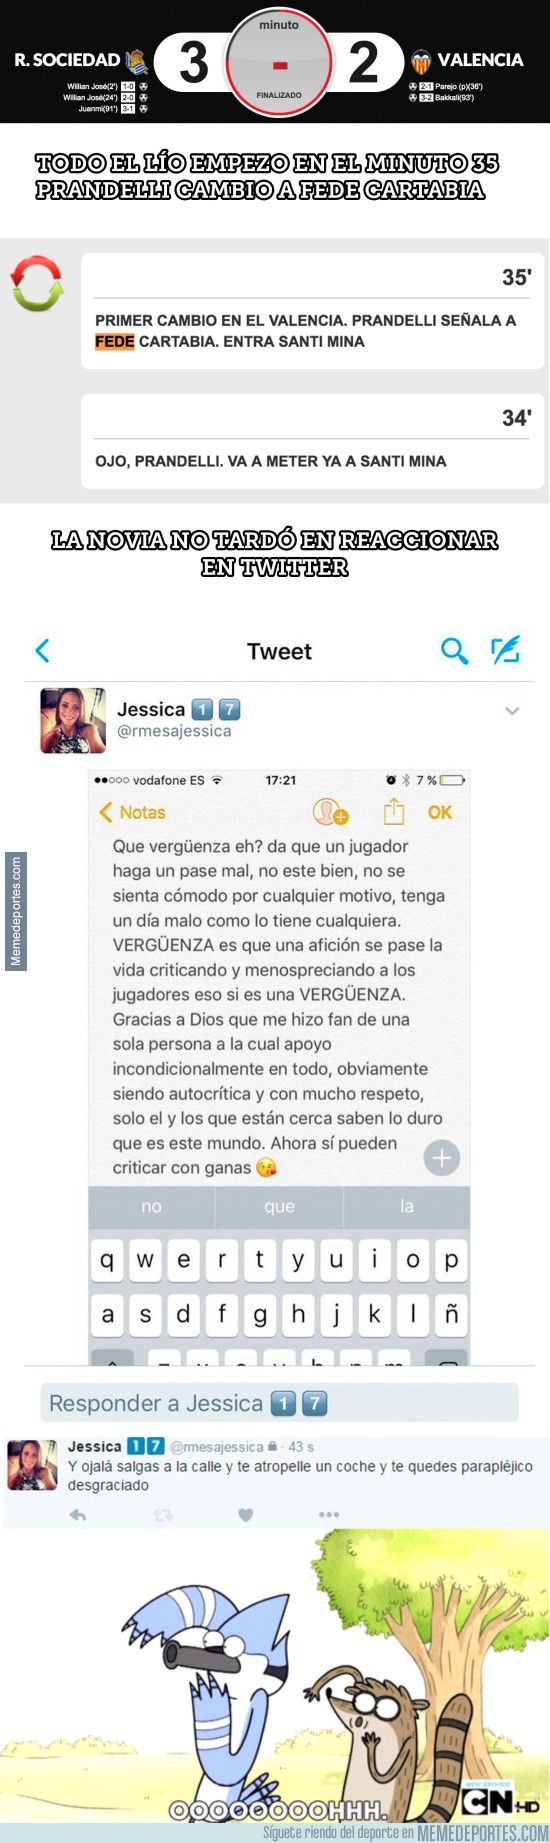 931893 - La novia de Fede Cartabia la lía en Twitter insultando a los aficionados del Valencia